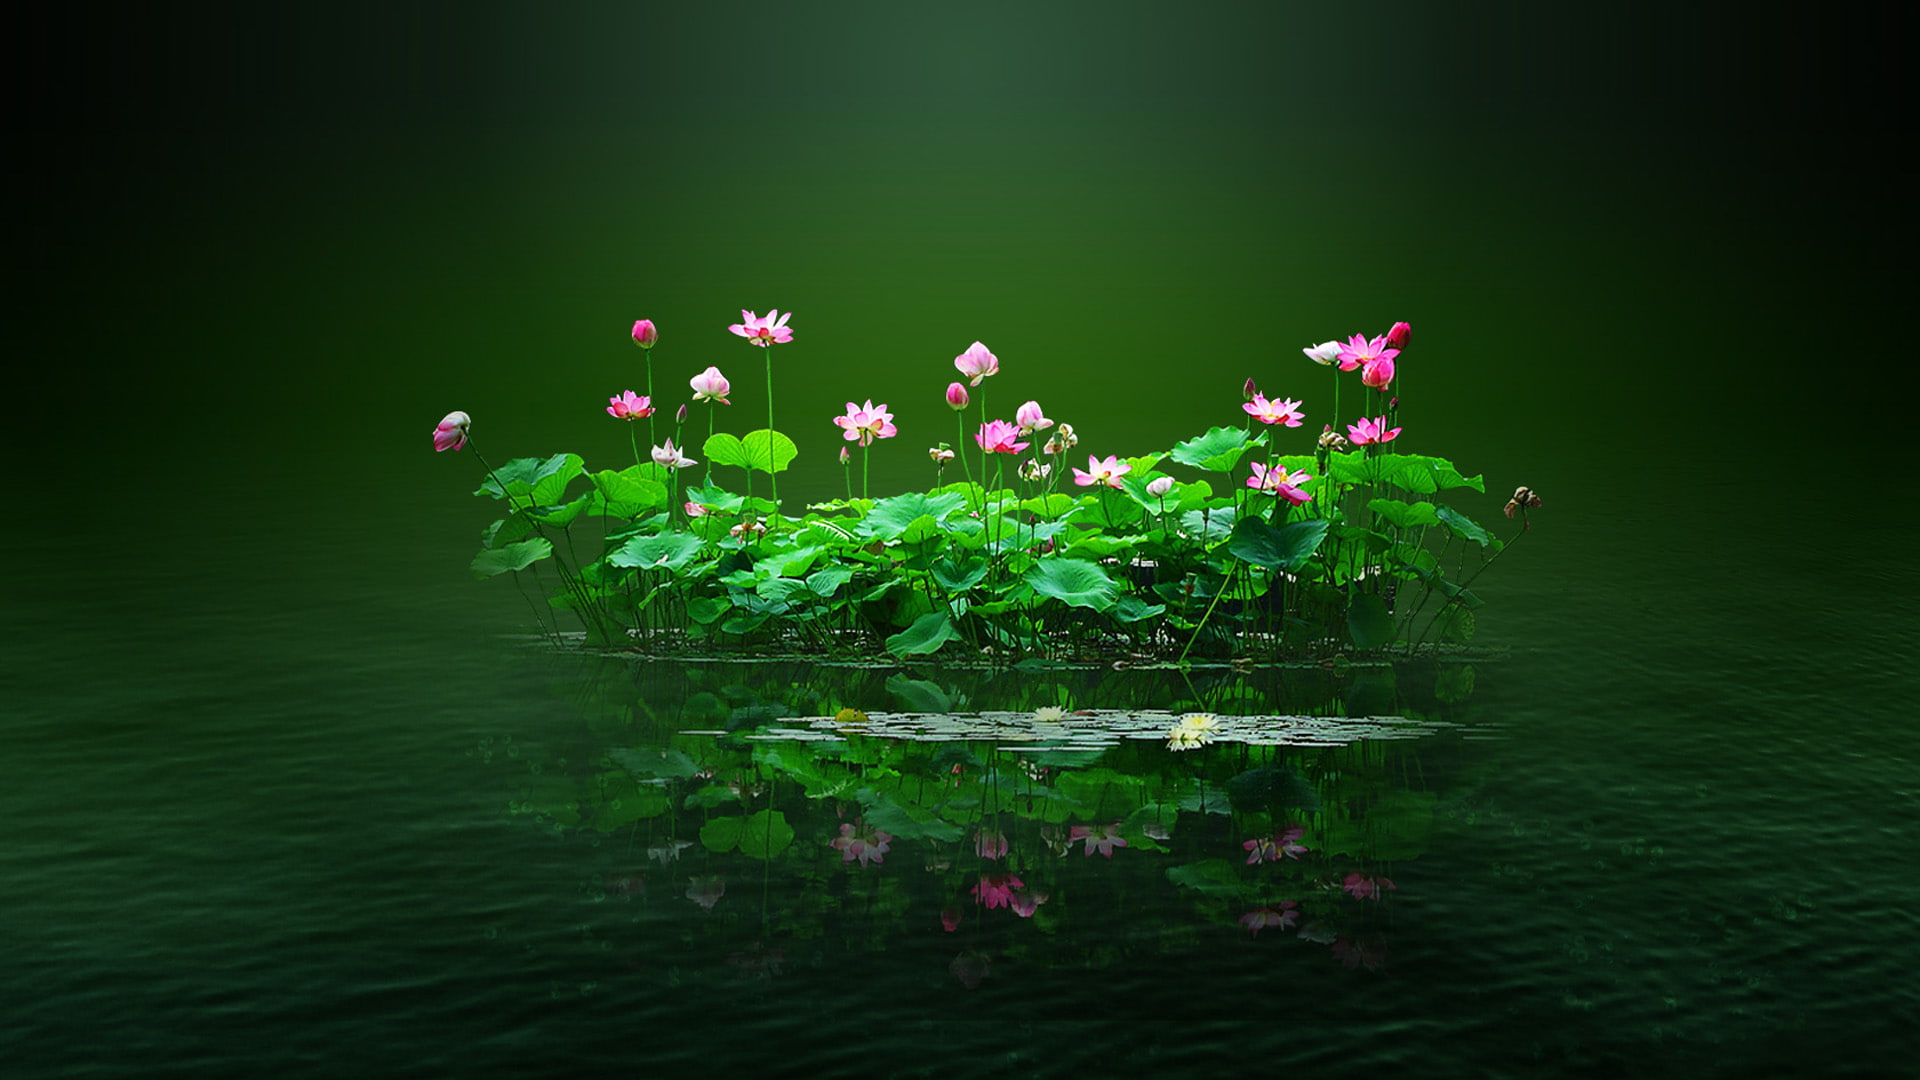 Lotus Flower Pond, lotus pond, lotus leaf, pond, leaf